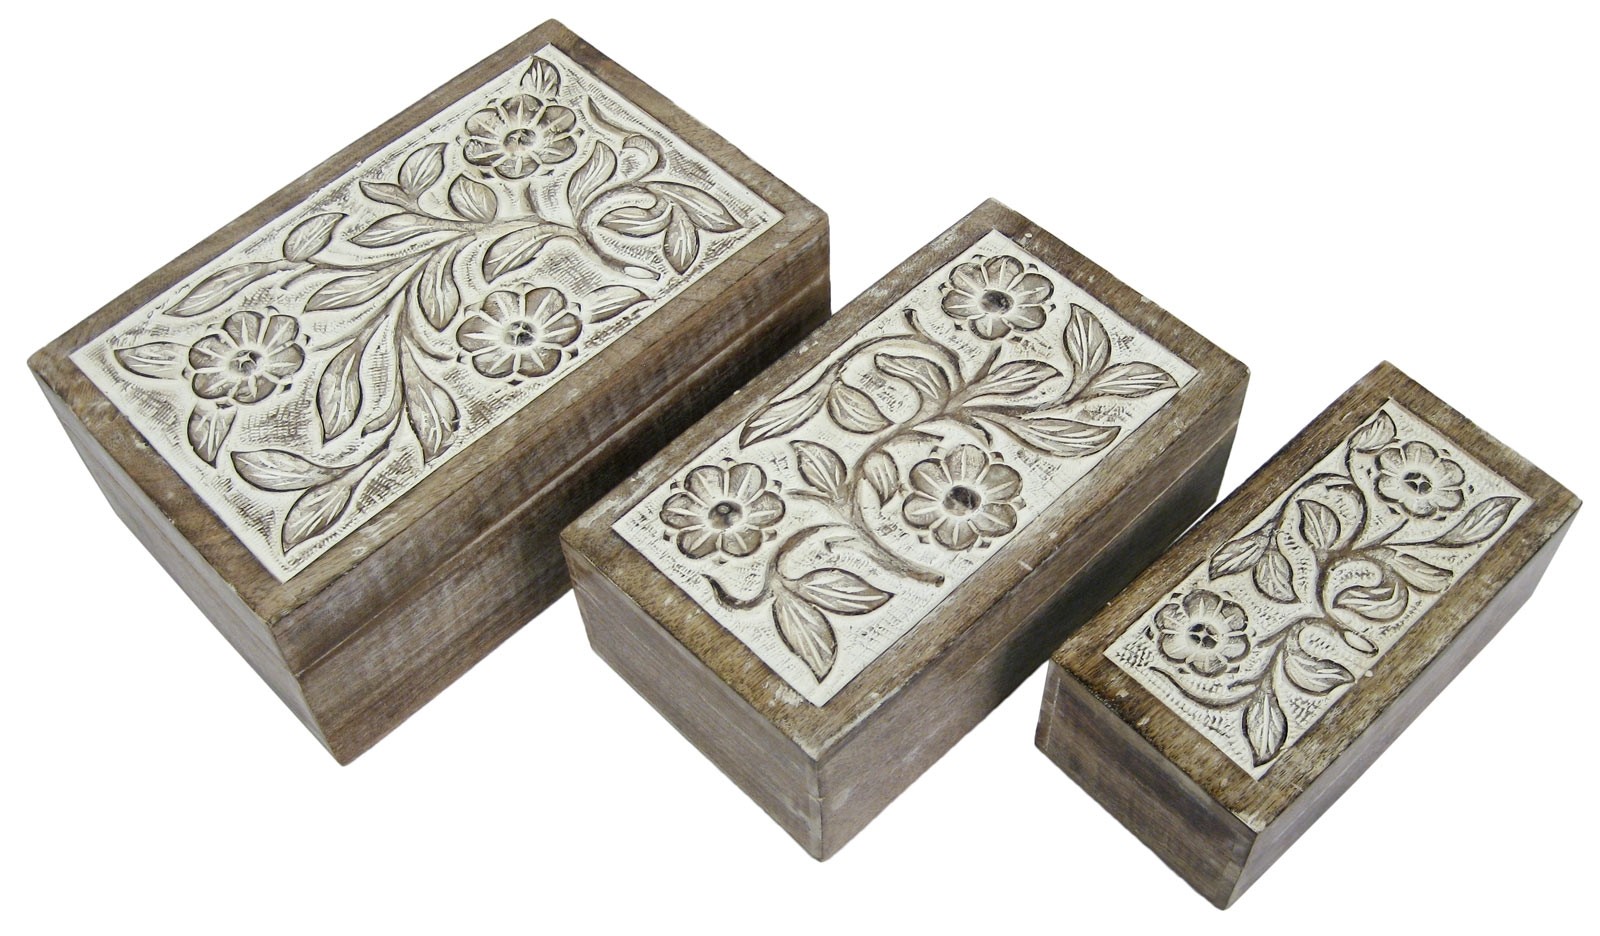 Mango Wood Set Of 3 Boxes - Burnt White Finish 28cm